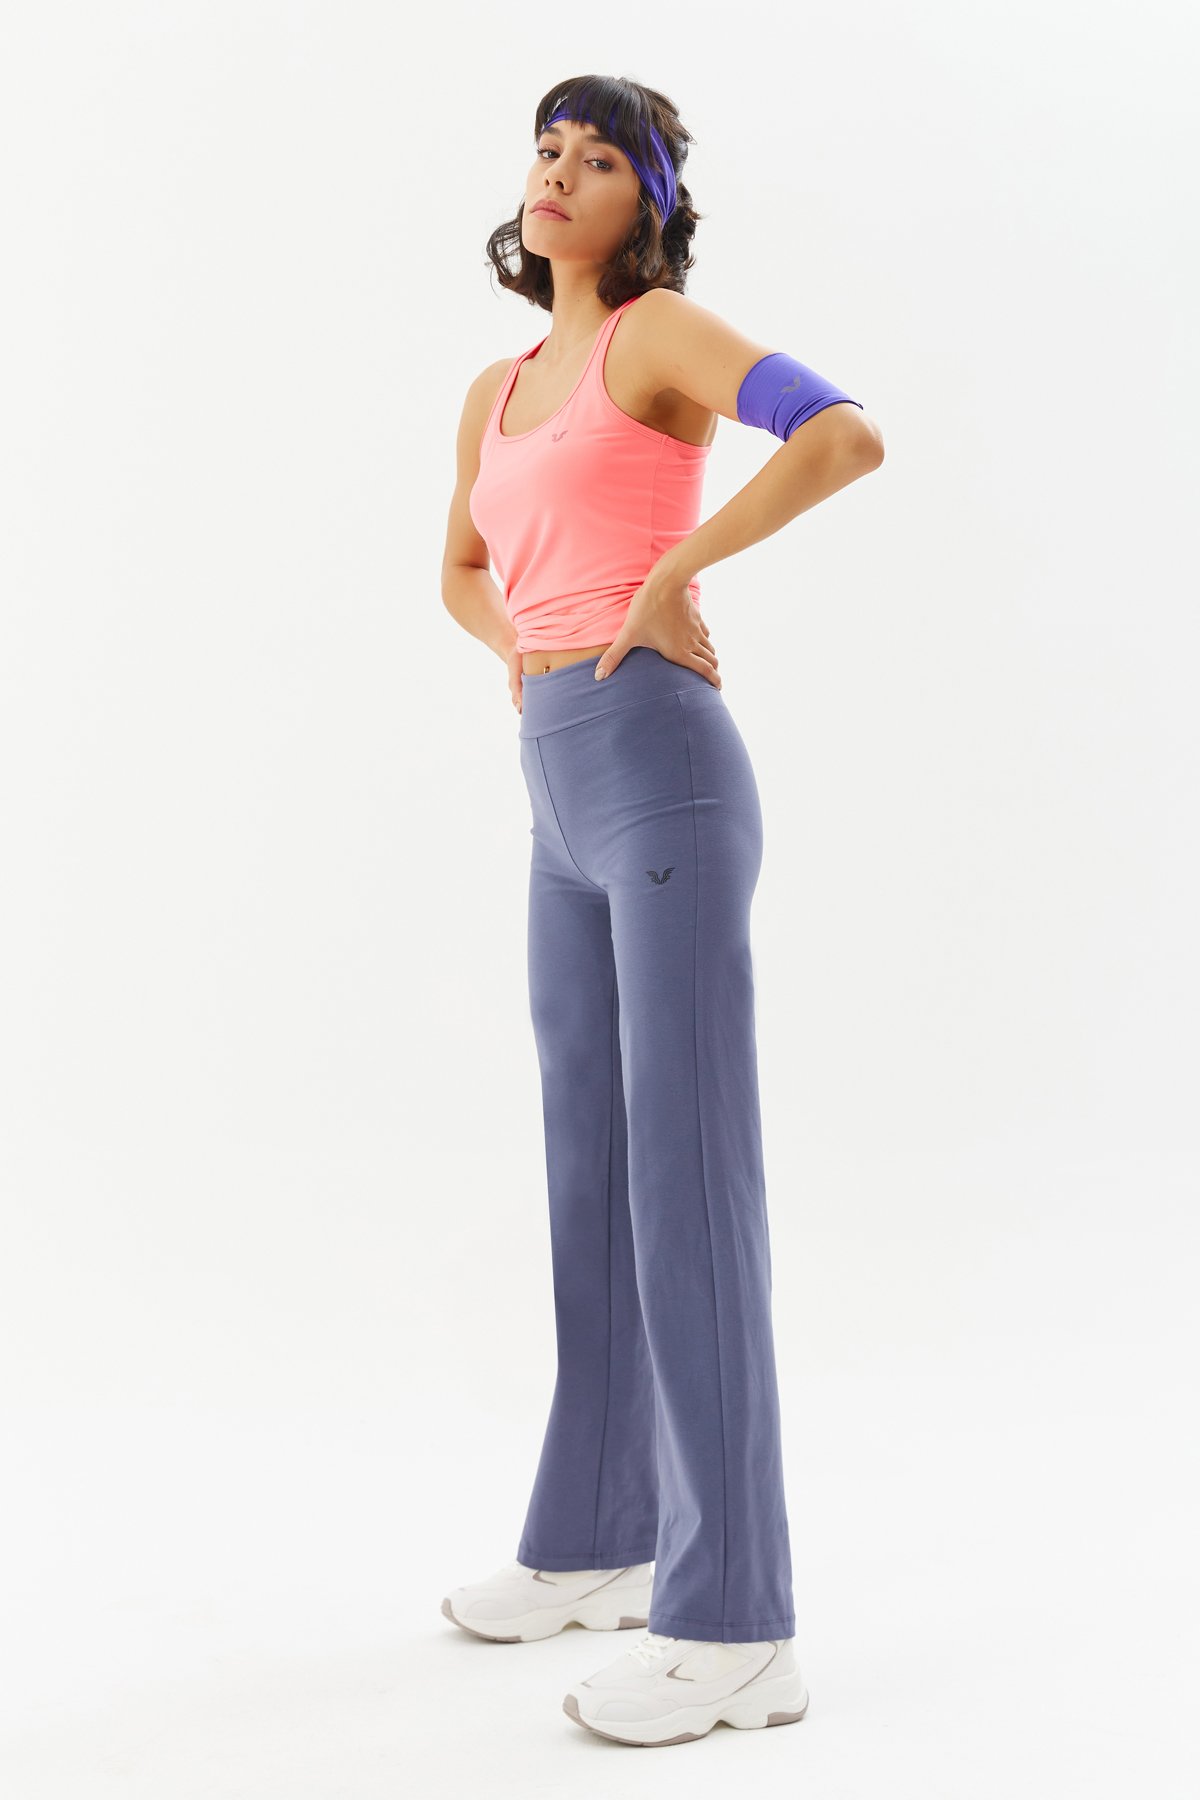 Kadın Açık Lacivert Yüksek Bel Pamuklu Spor ve Günlük Bol Paça Yoga Pantolonu Eşofman Altı 0118